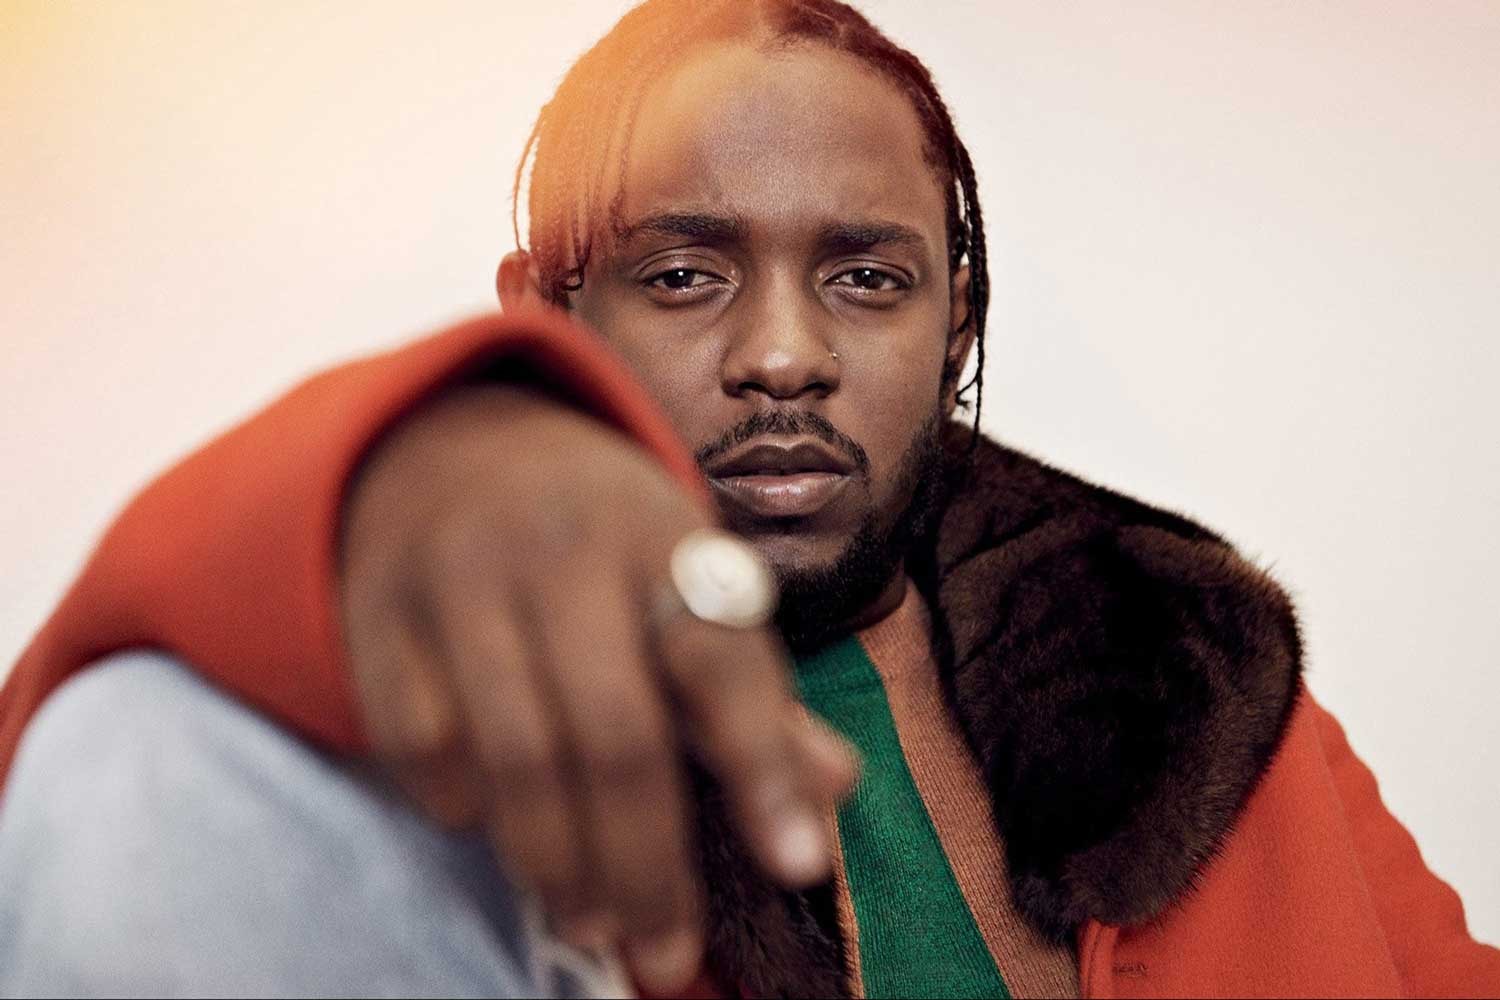 ヒップホップ界のカリスマ Kendrick Lamar の半生に迫った伝記文学の製作が決定